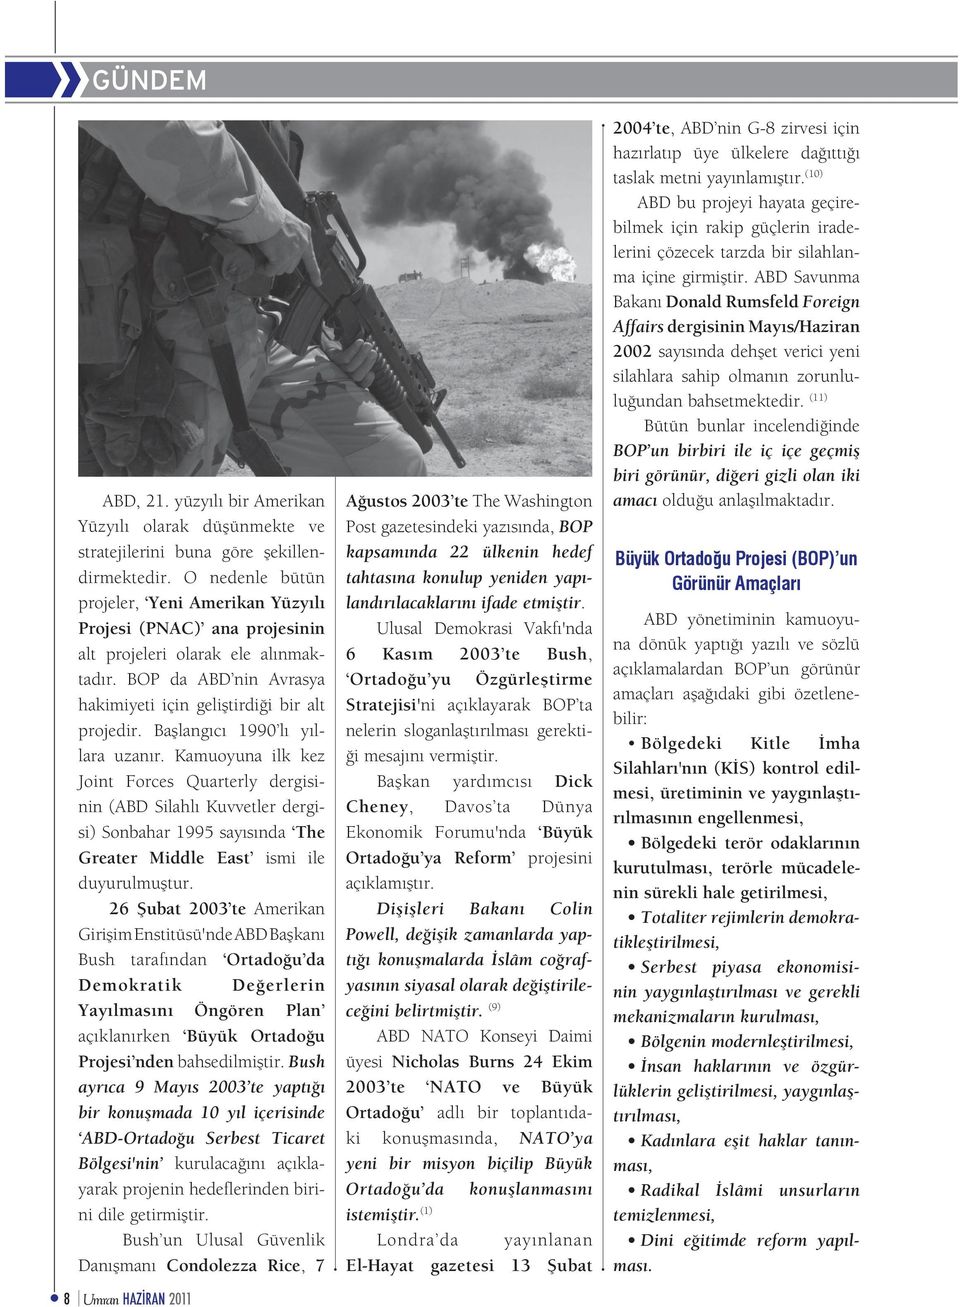 Başlangıcı 1990 lı yıllara uzanır. Kamuoyuna ilk kez Joint Forces Quarterly dergisinin (ABD Silahlı Kuvvetler dergisi) Sonbahar 1995 sayısında The Greater Middle East ismi ile duyurulmuştur.